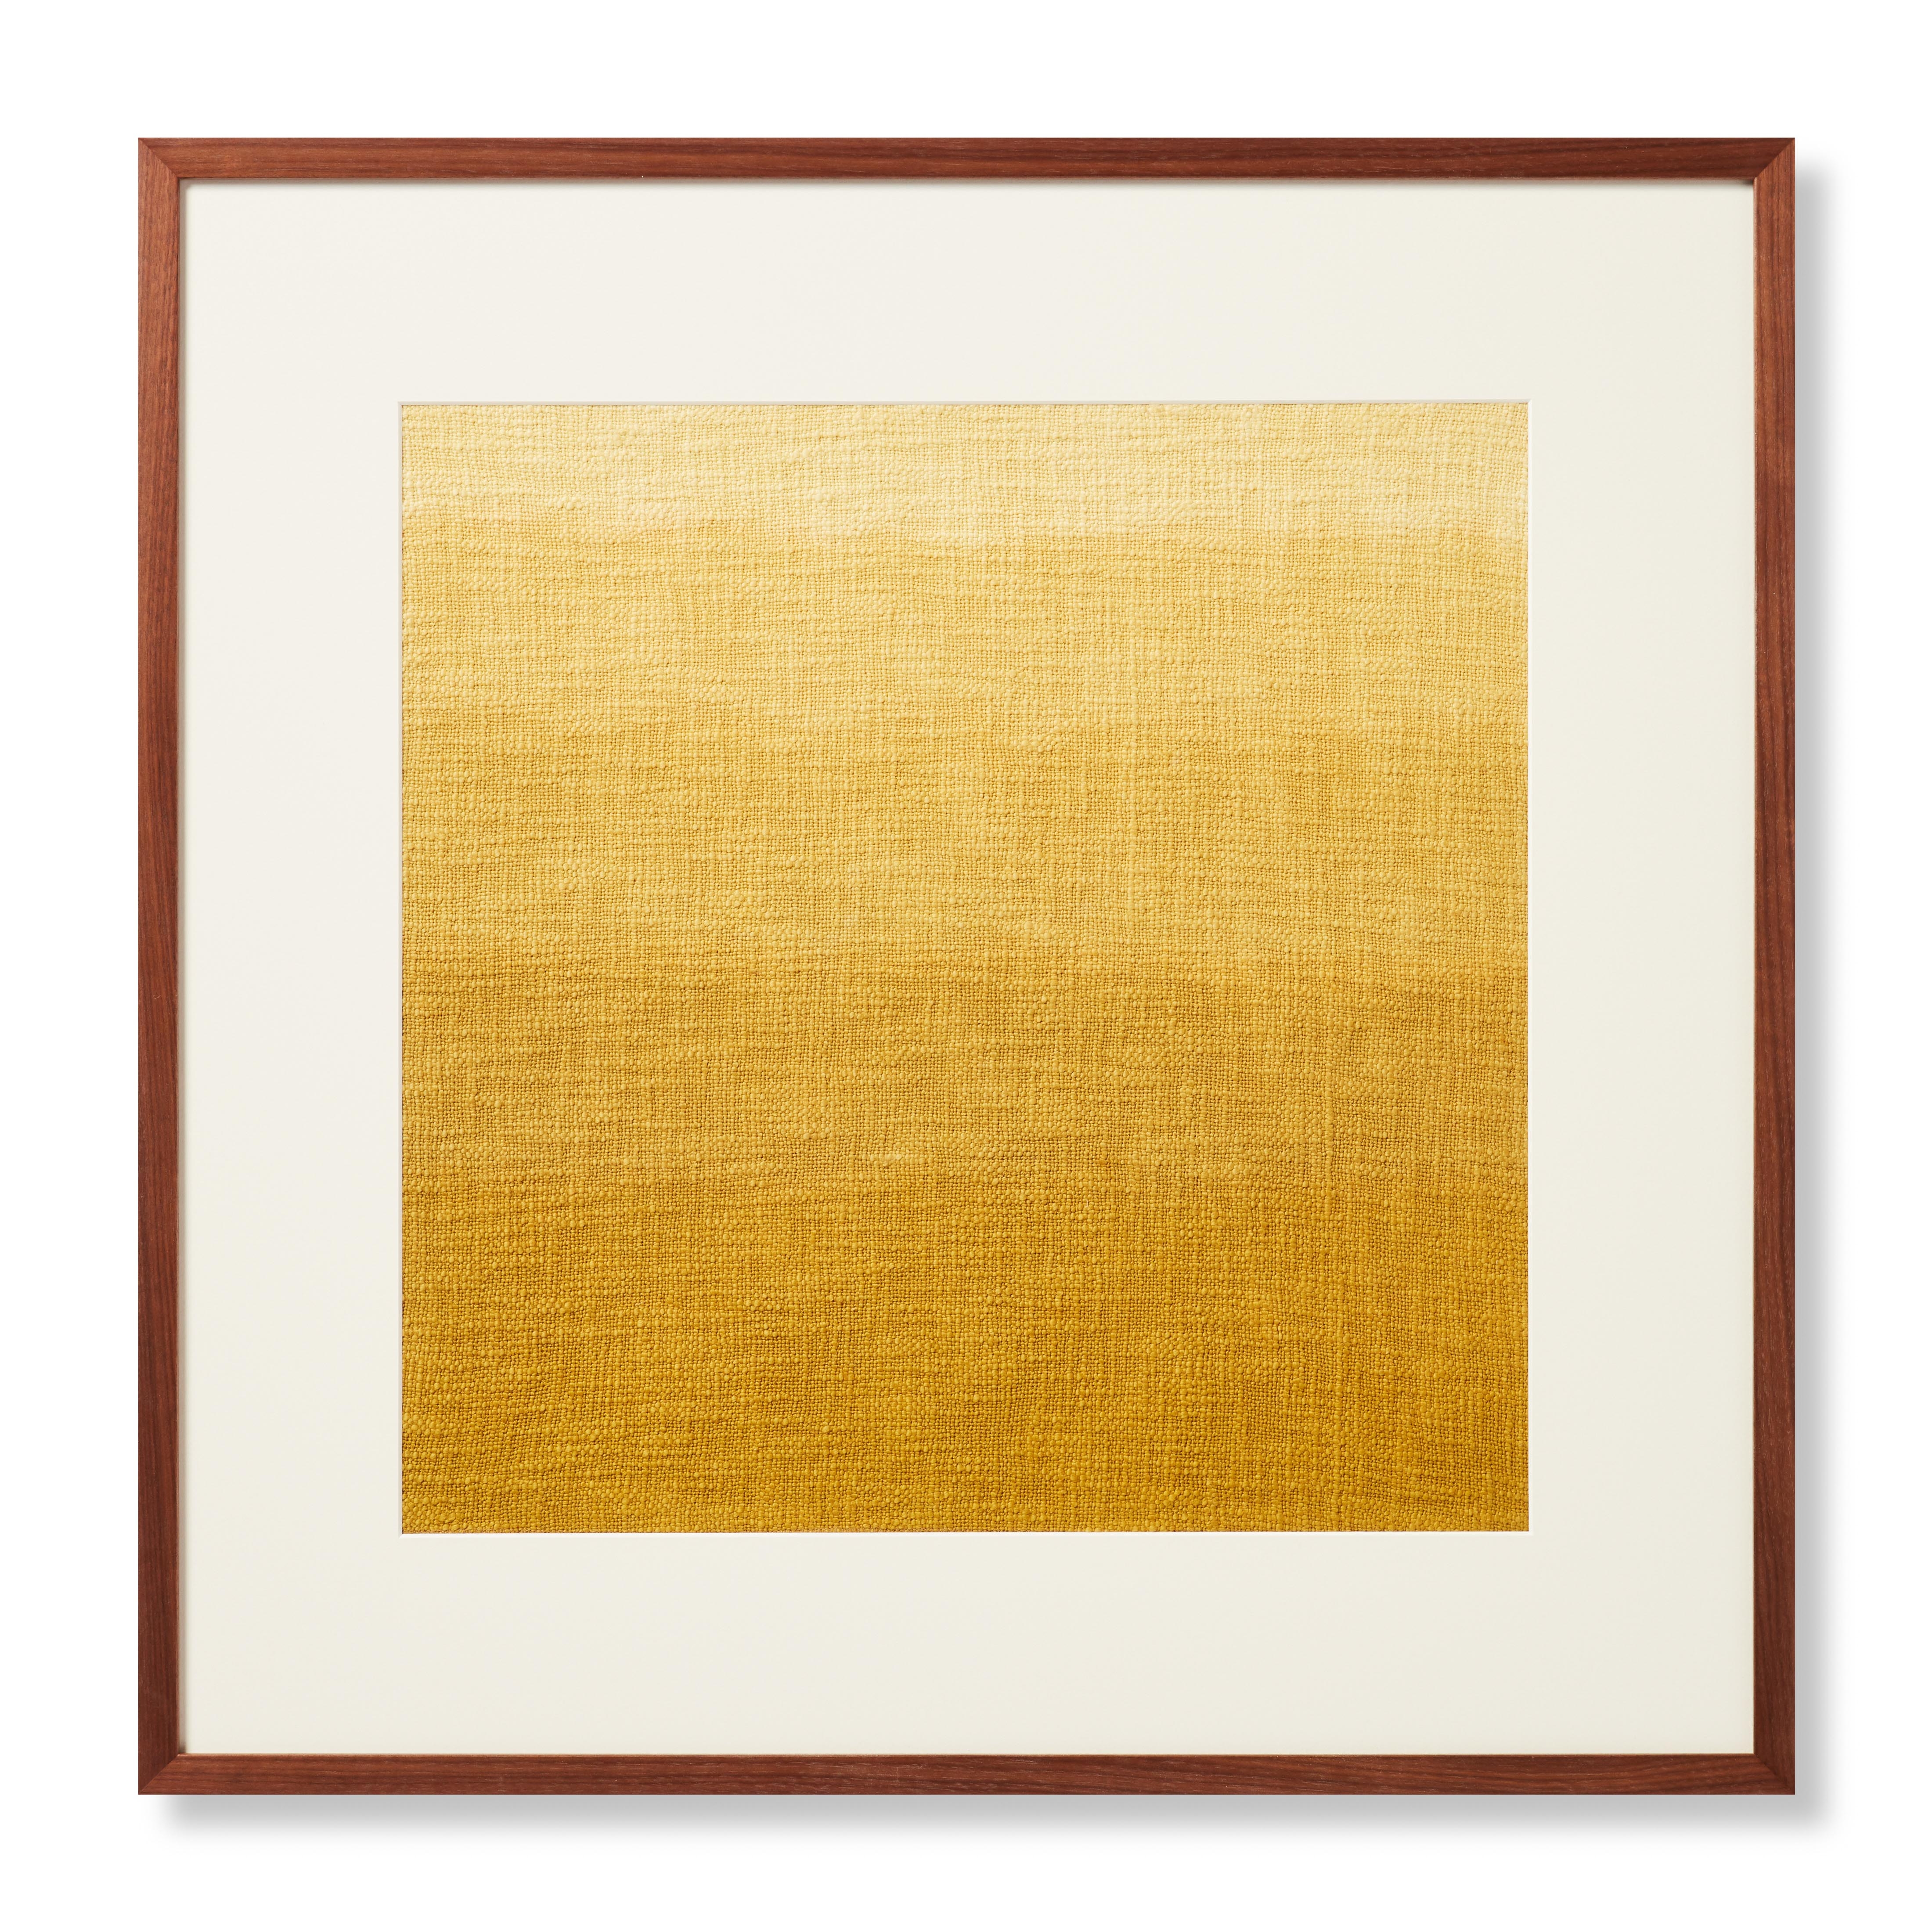 WOOD FRAME DEEPC GOLD 2'-4" x 2'-4" WALL ART - Image 0